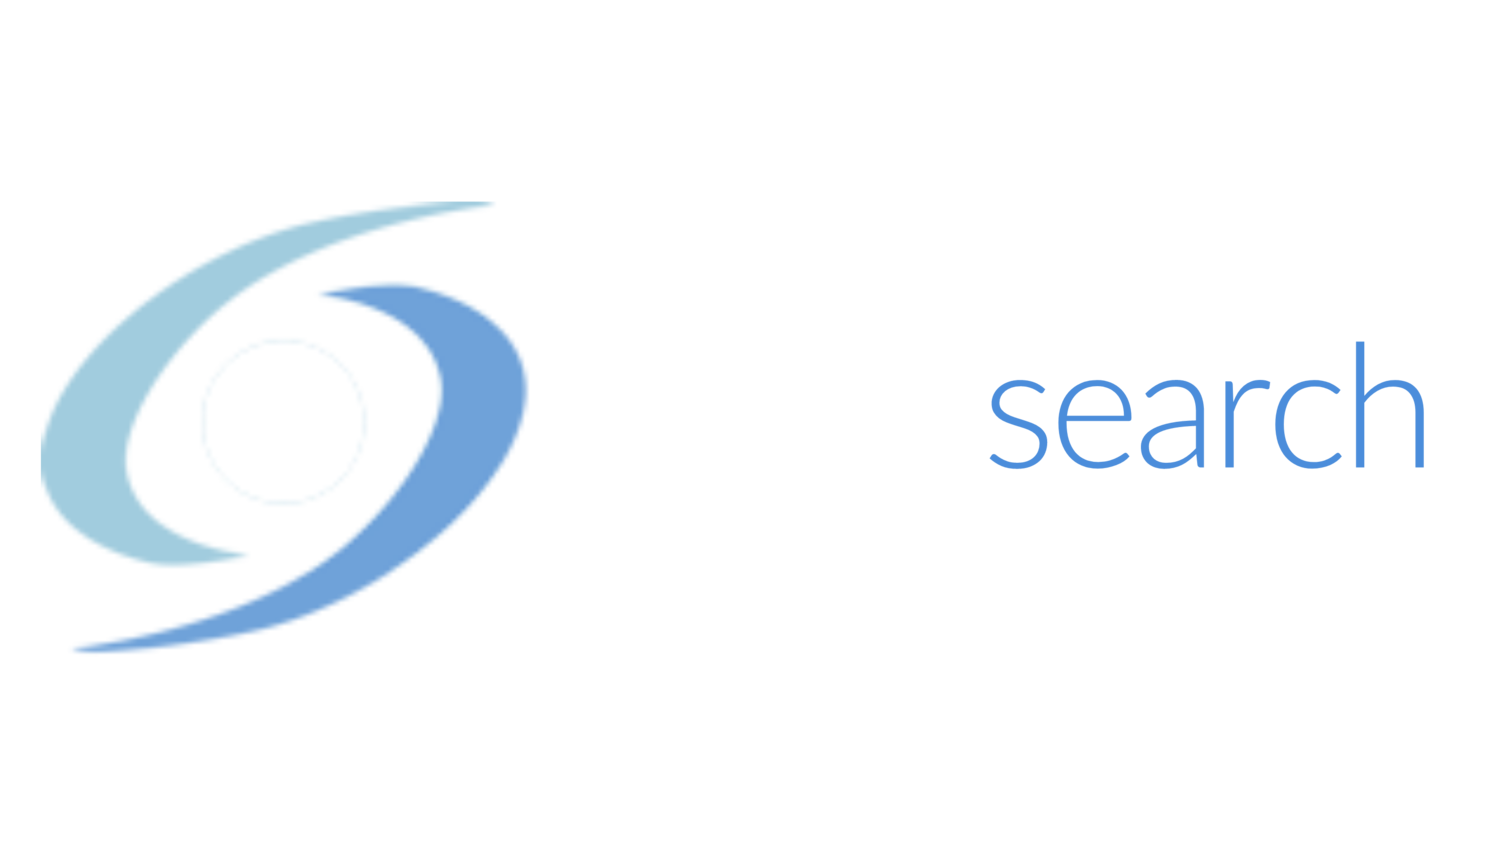 Canon Search